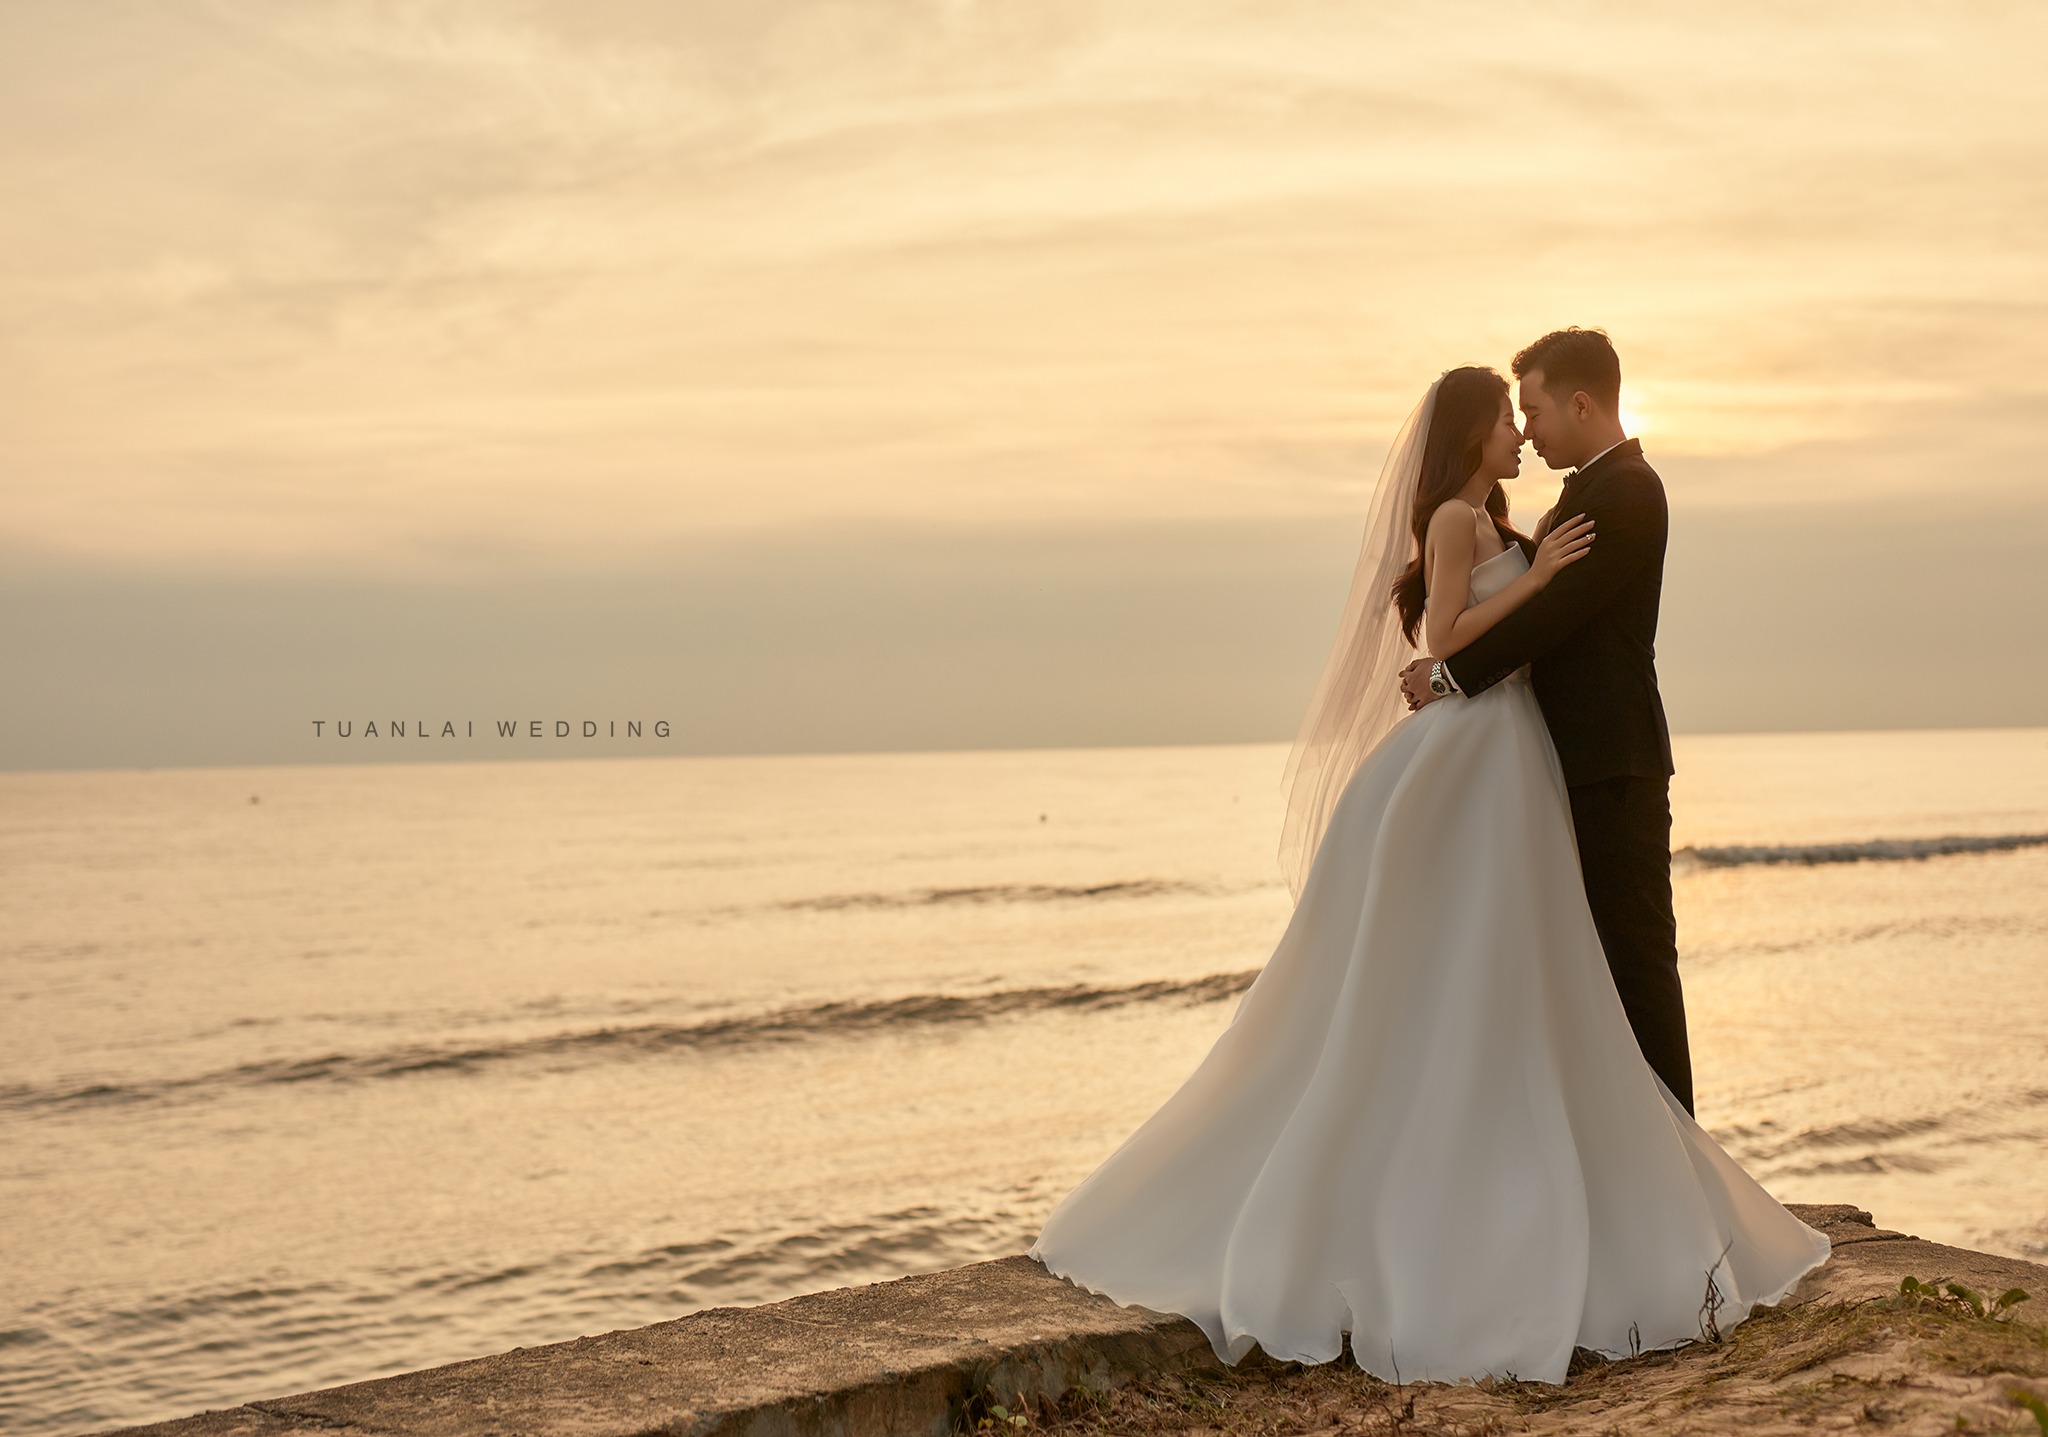 Tuấn Lài Wedding - Quảng Bình ảnh 1